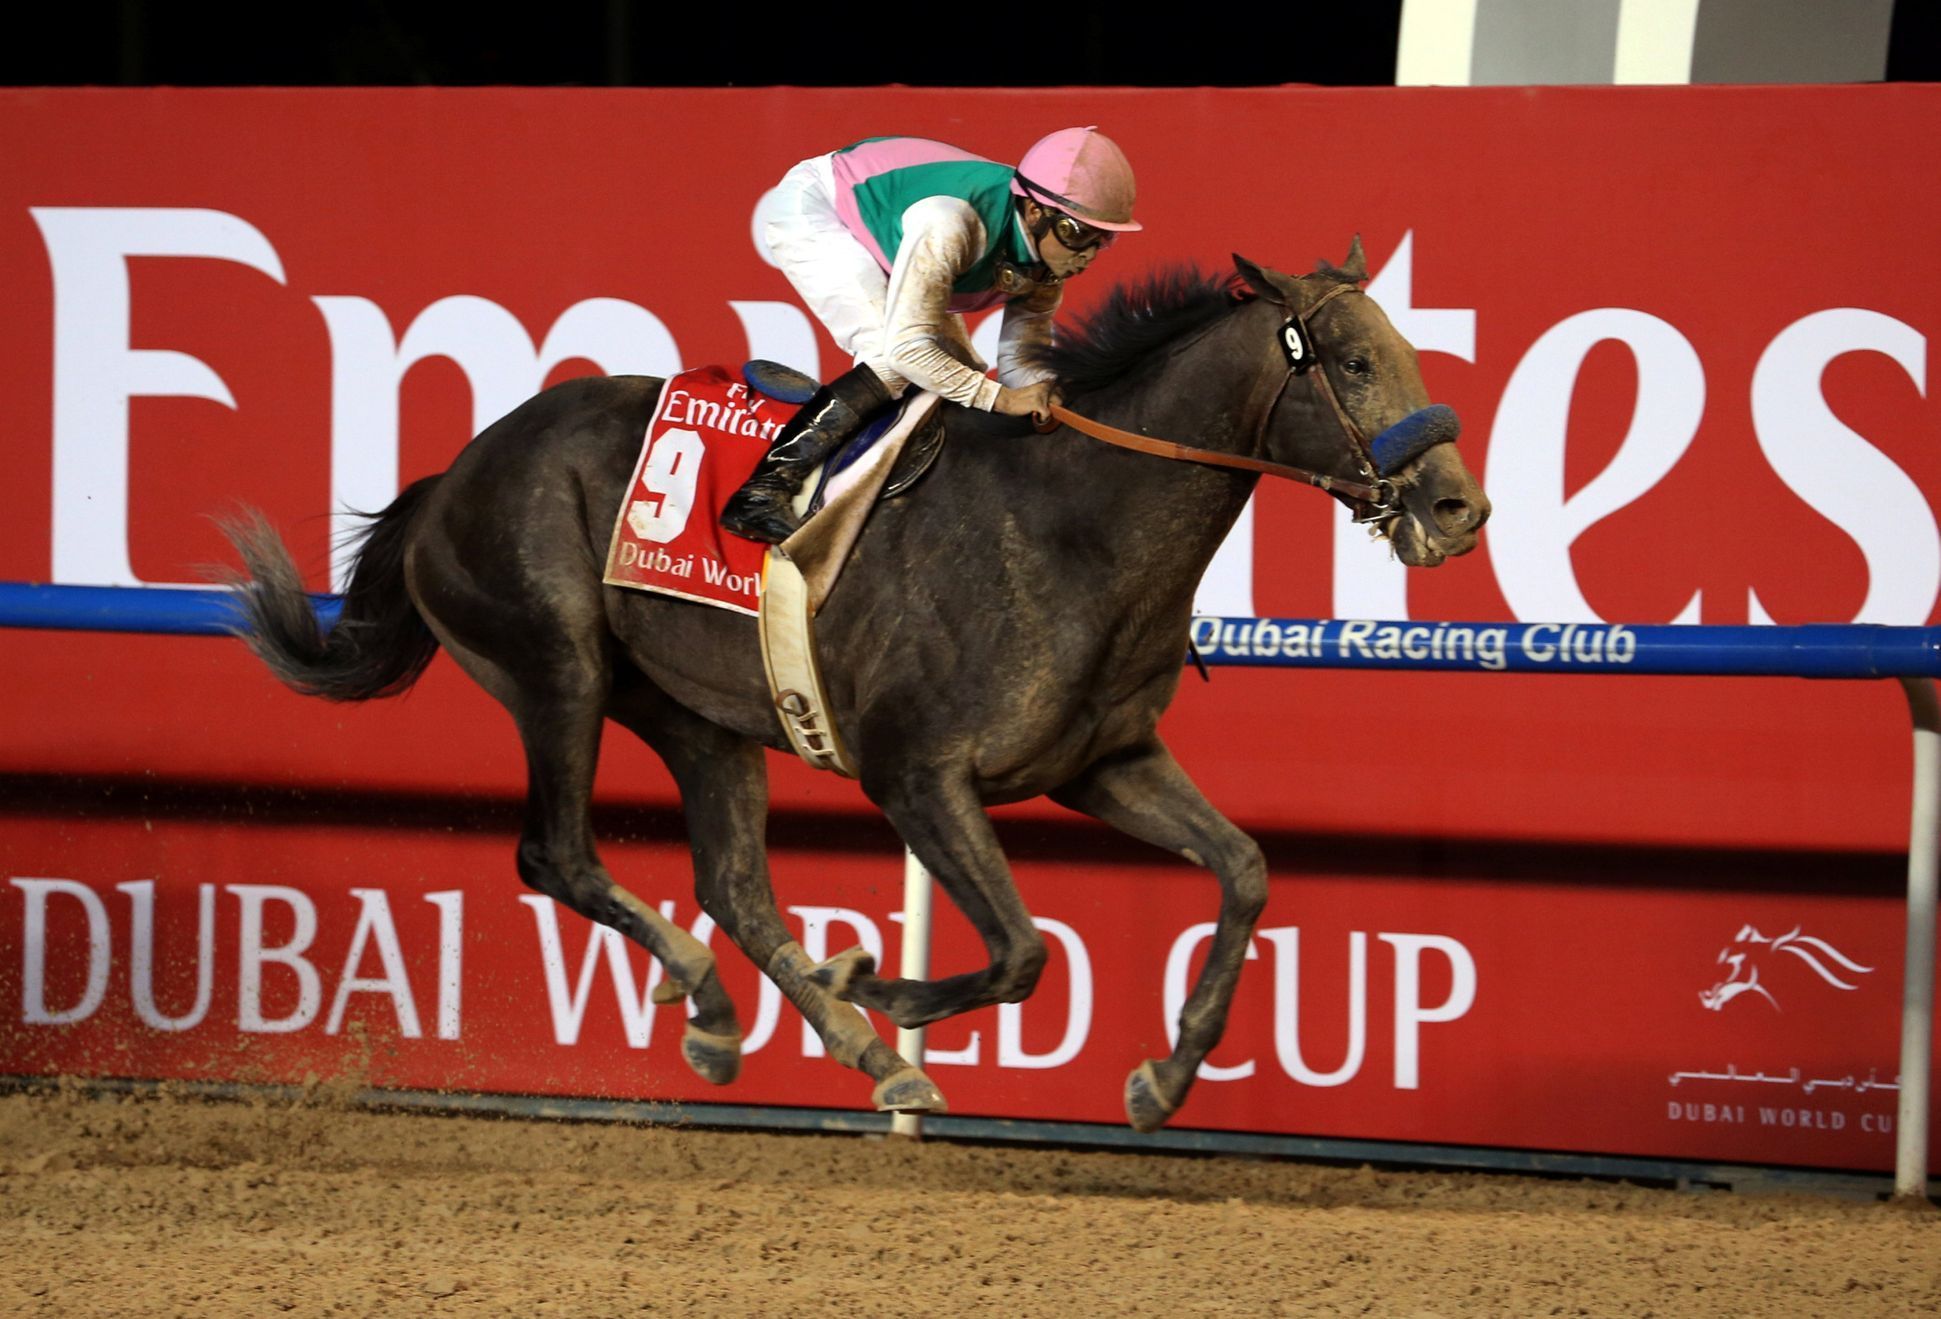 Vítězem Světového poháru v Dubaji se stal kůň Arrogate